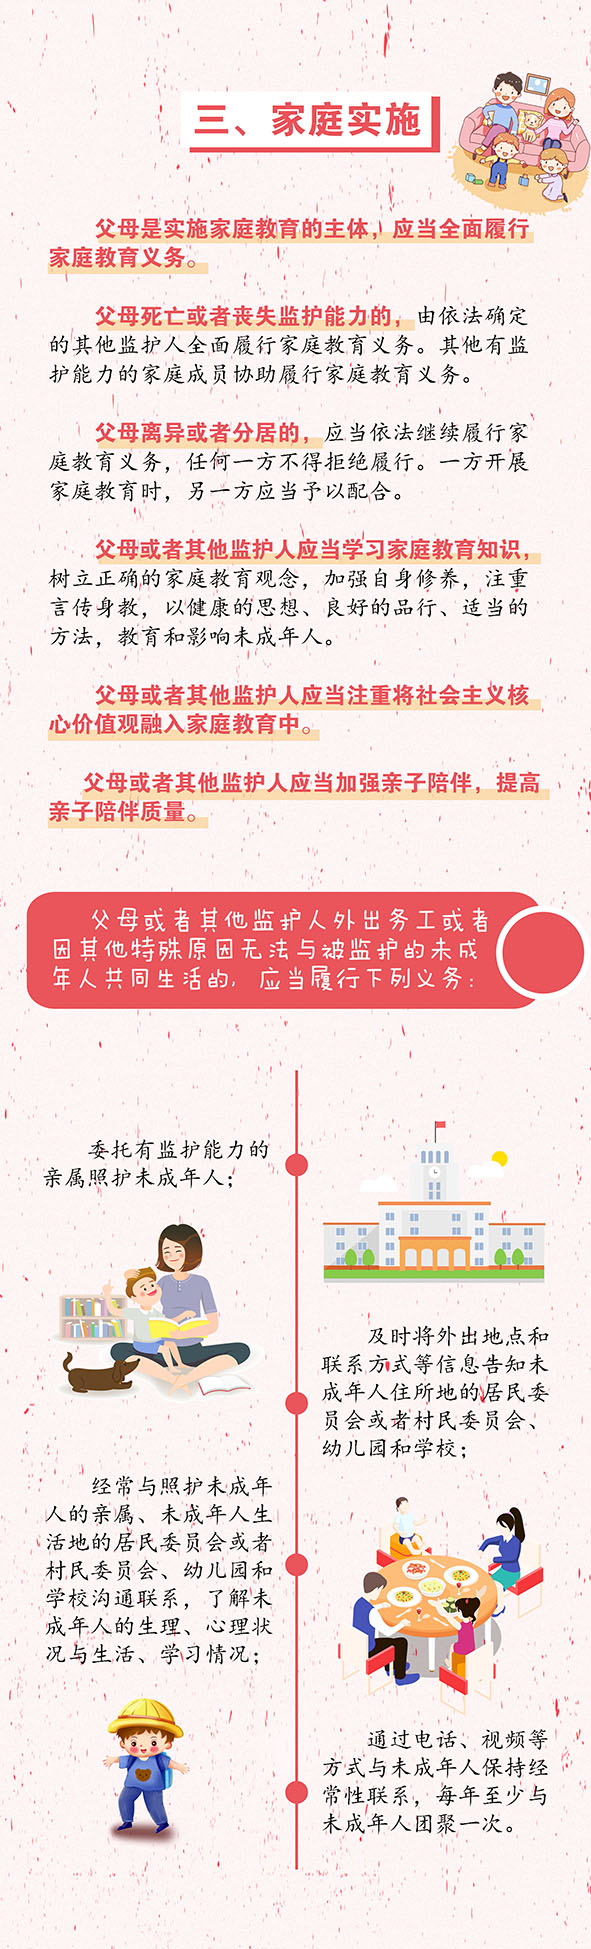 安徽省家庭教育促进条例